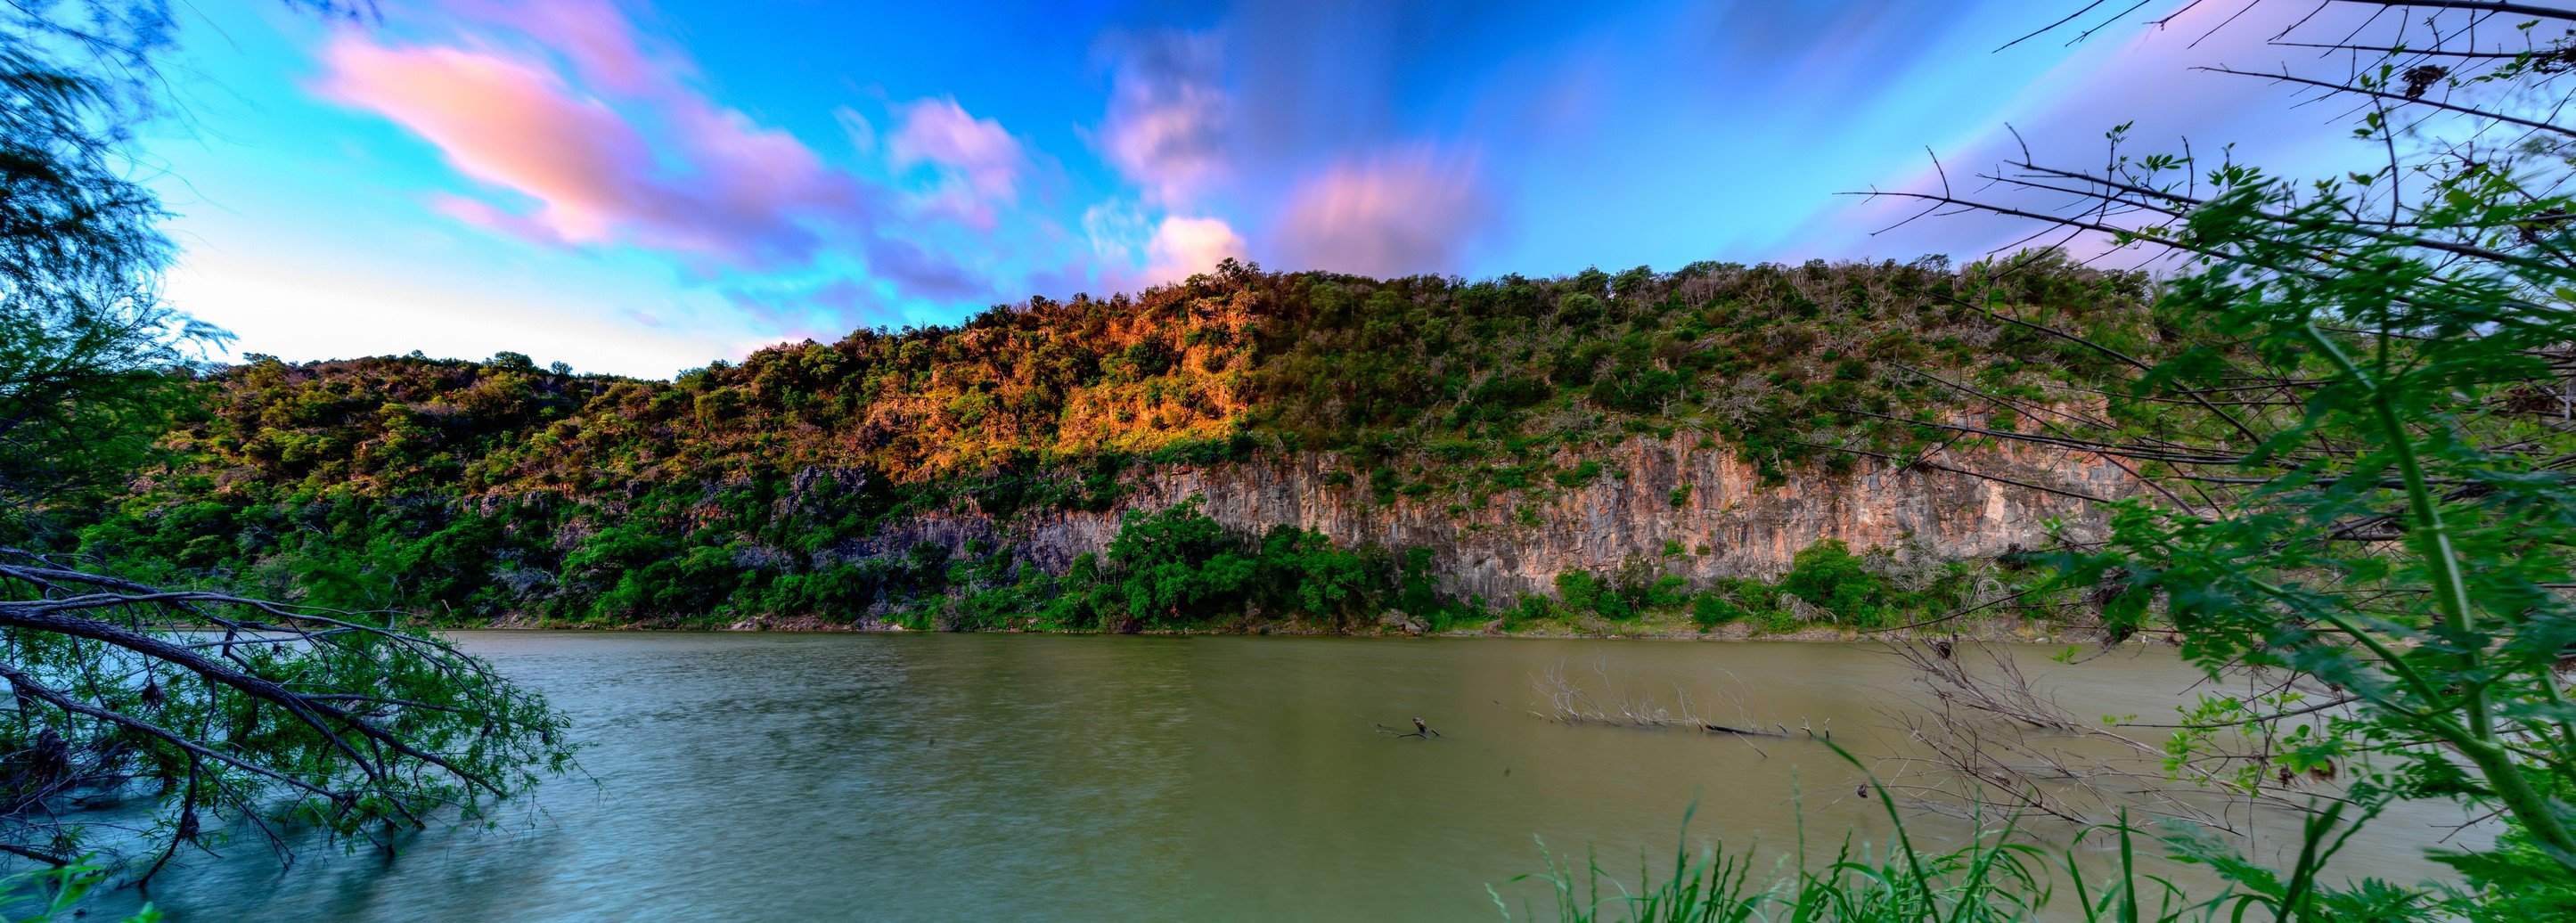 Rio Grande river running through Texas